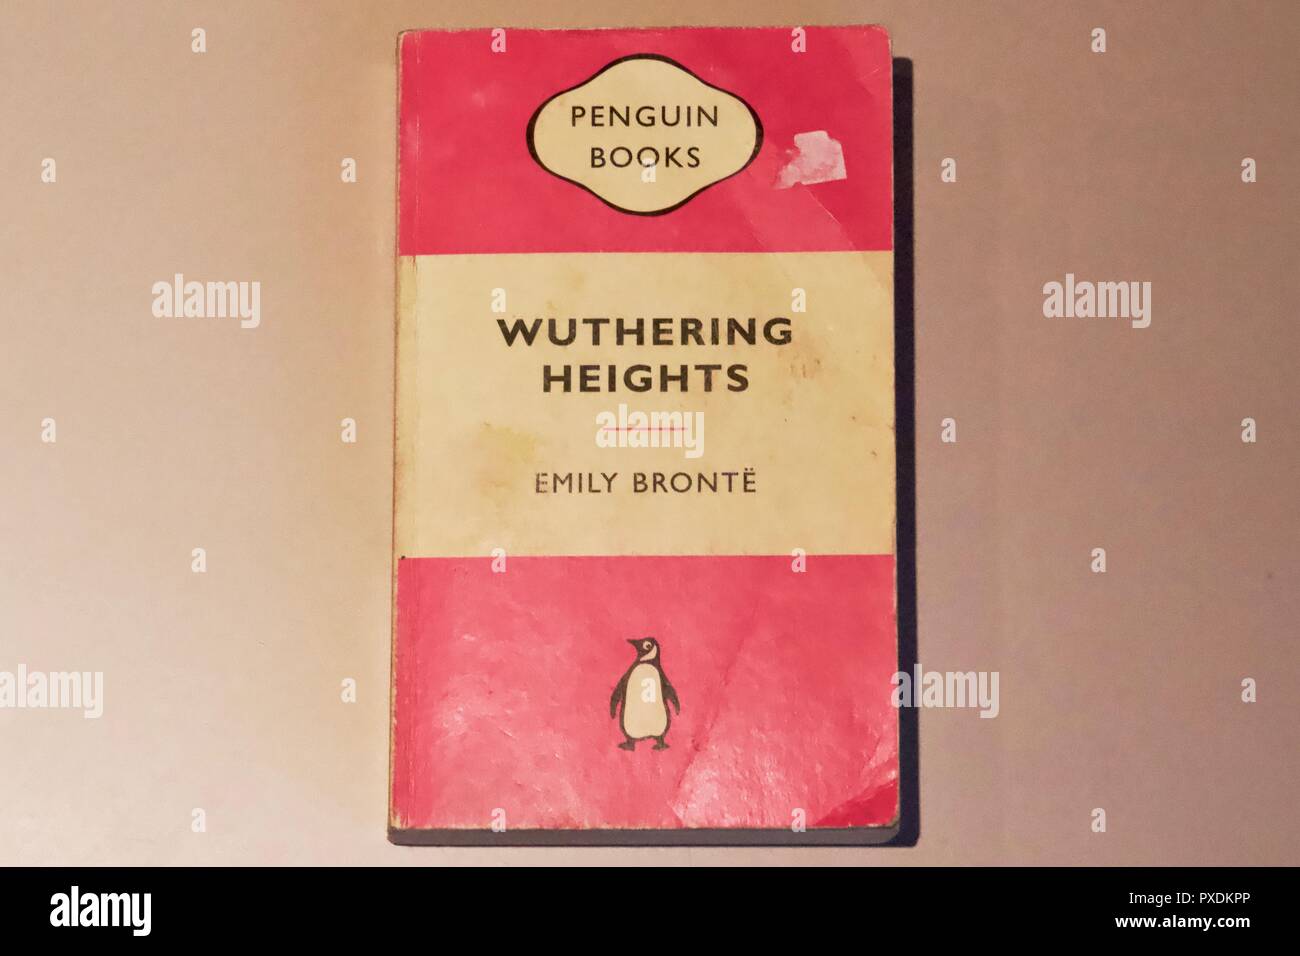 Rosa Taschenbuch Abdeckung für Wuthering Heights von Emily Bronte, von Penguin Books veröffentlicht. Stockfoto